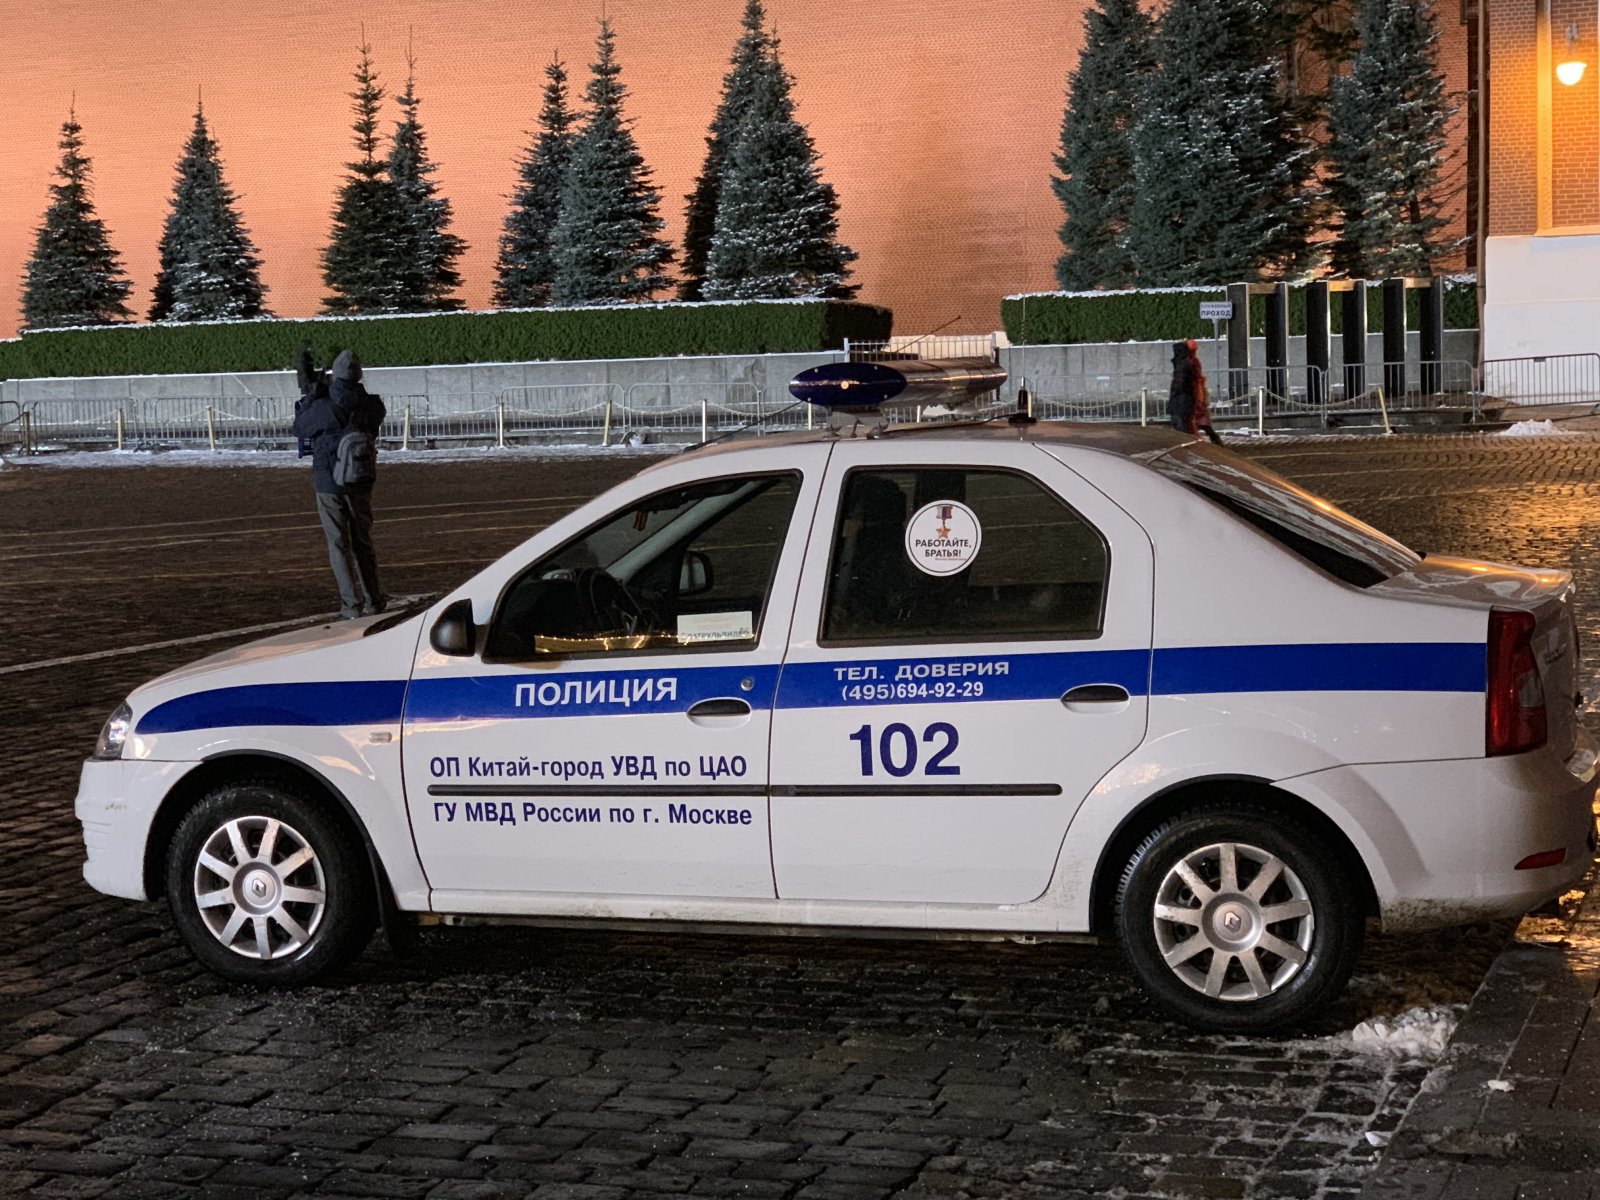 В центре столицы задержали подозреваемого в угоне с мойки иномарки стоимостью 25 млн рублей